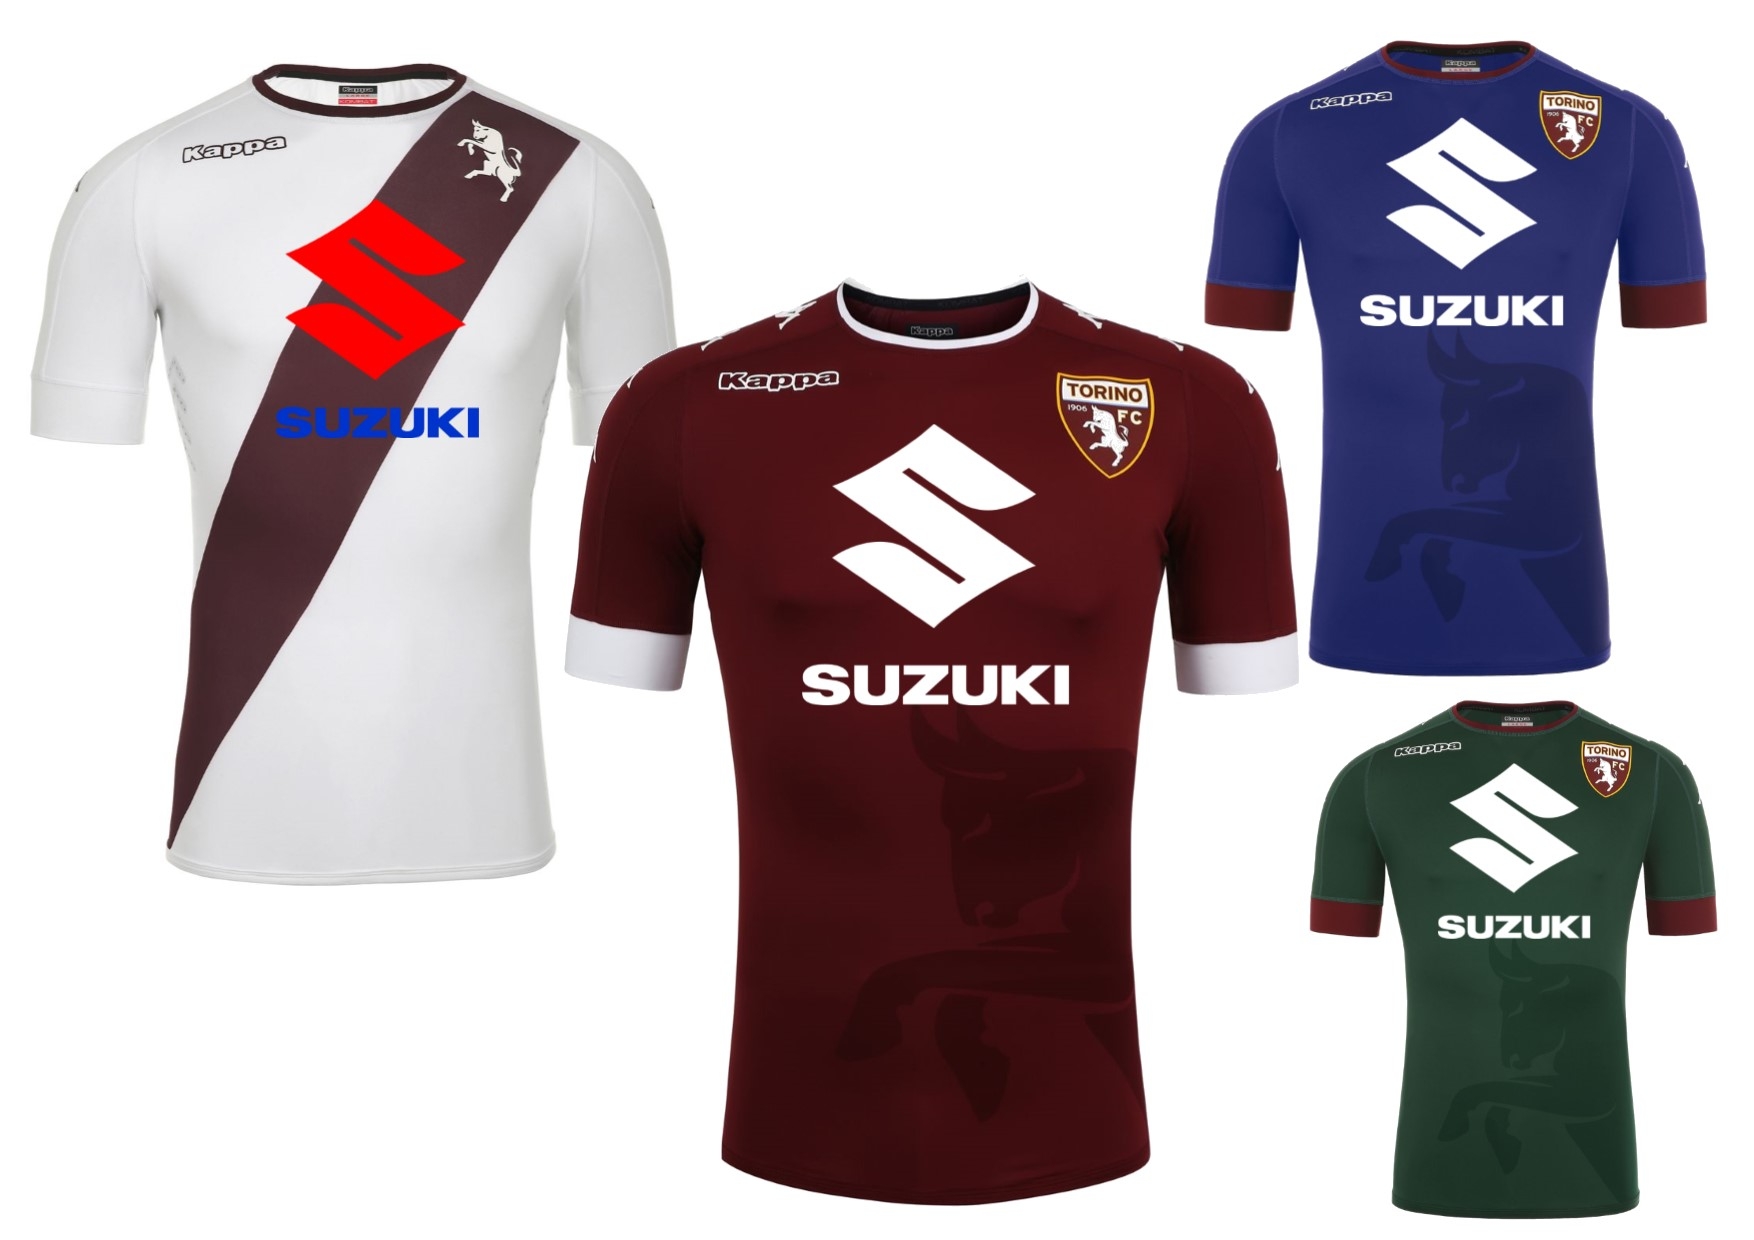 Suzuki sarà Main Sponsor del Torino Football Club anche per la stagione 2016/2017